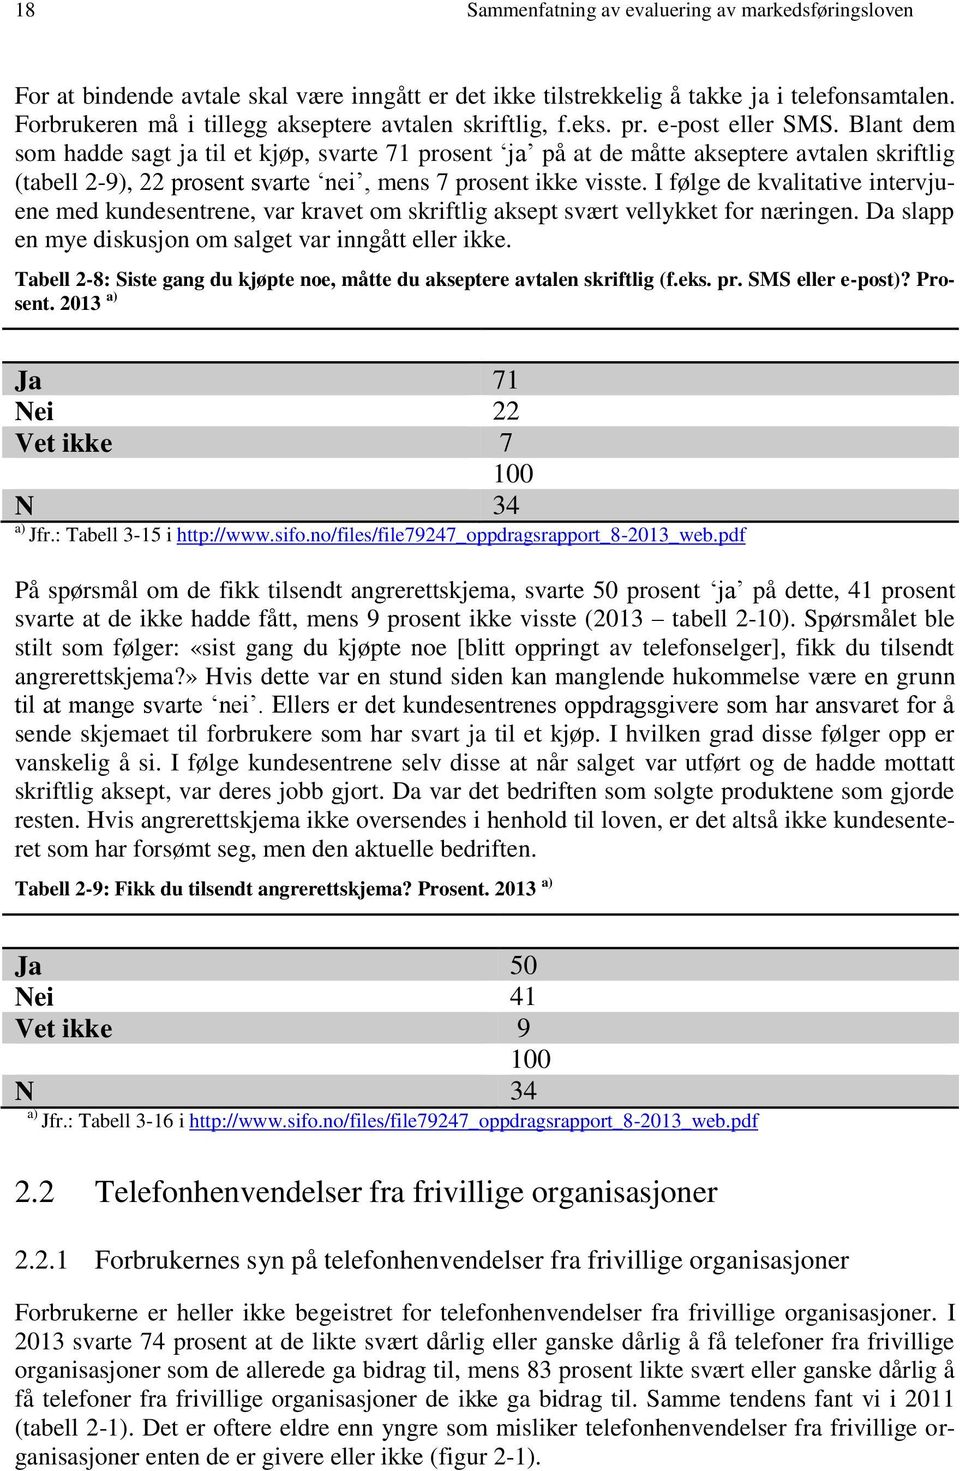 Sammenfatning av evaluering av markedsføringsloven med vekt på telefonsalg  - PDF Gratis nedlasting